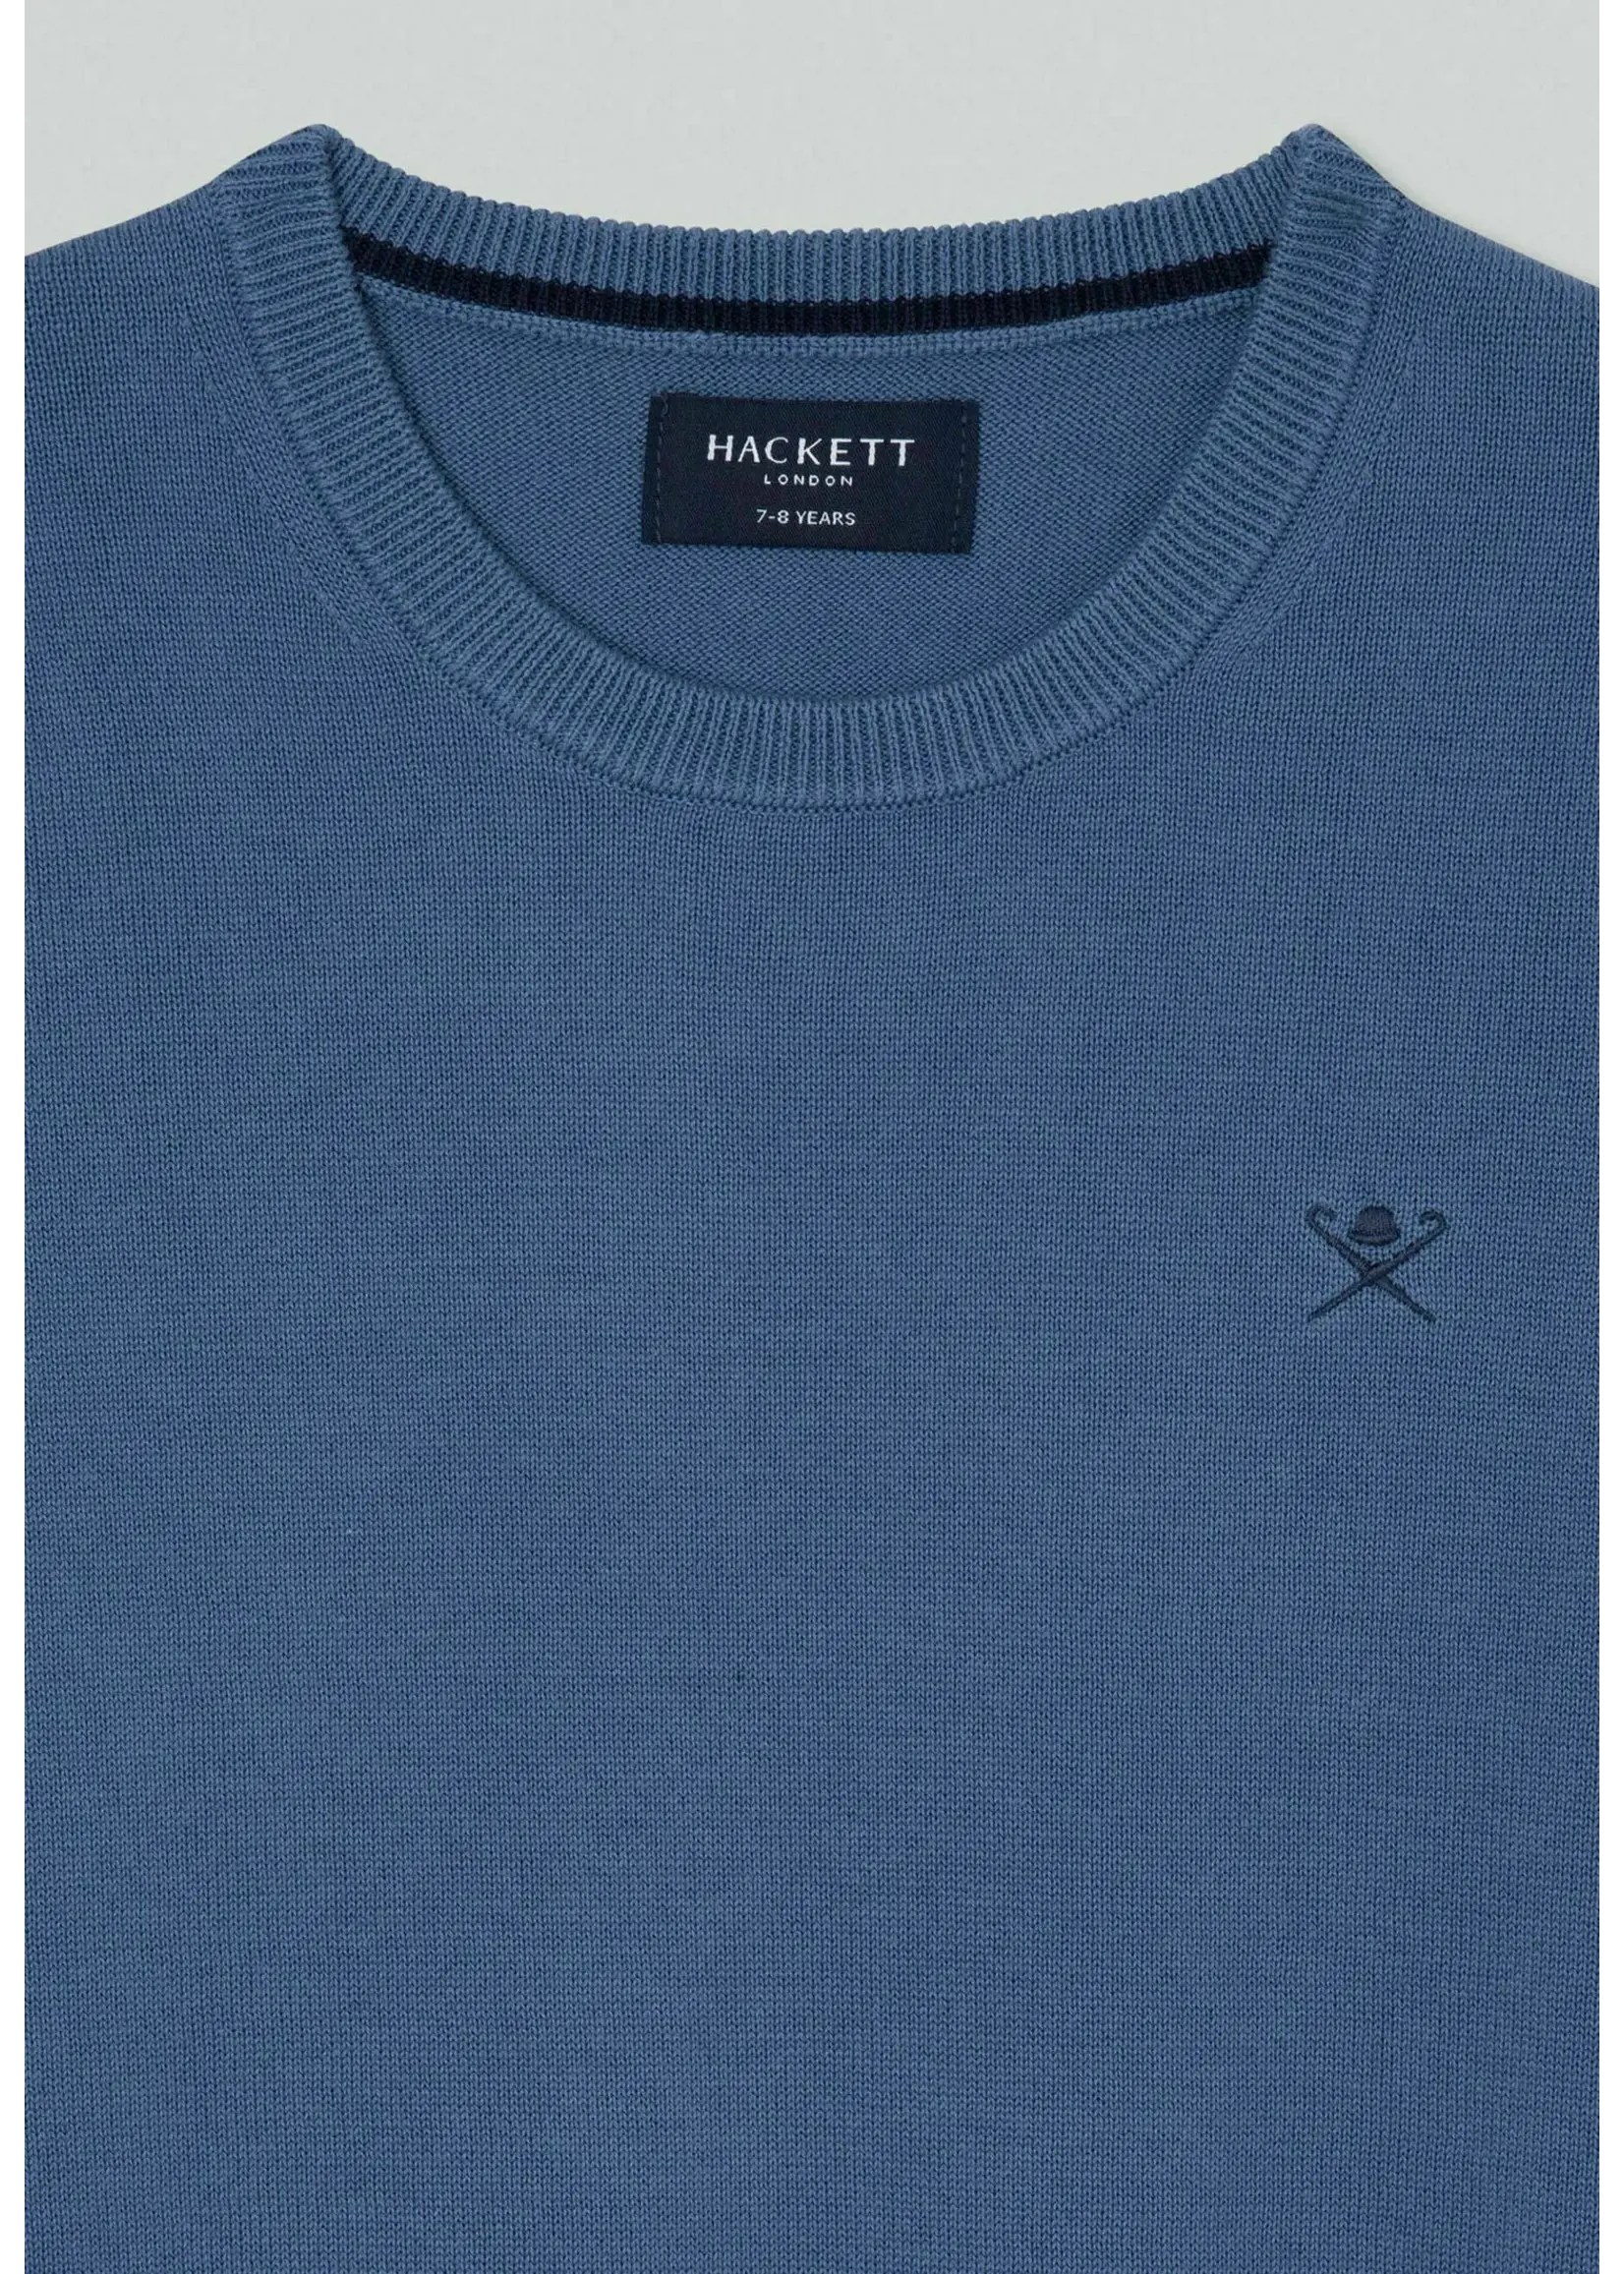 Hackett LOGO CREW 563STEEL BLUE - HK700813